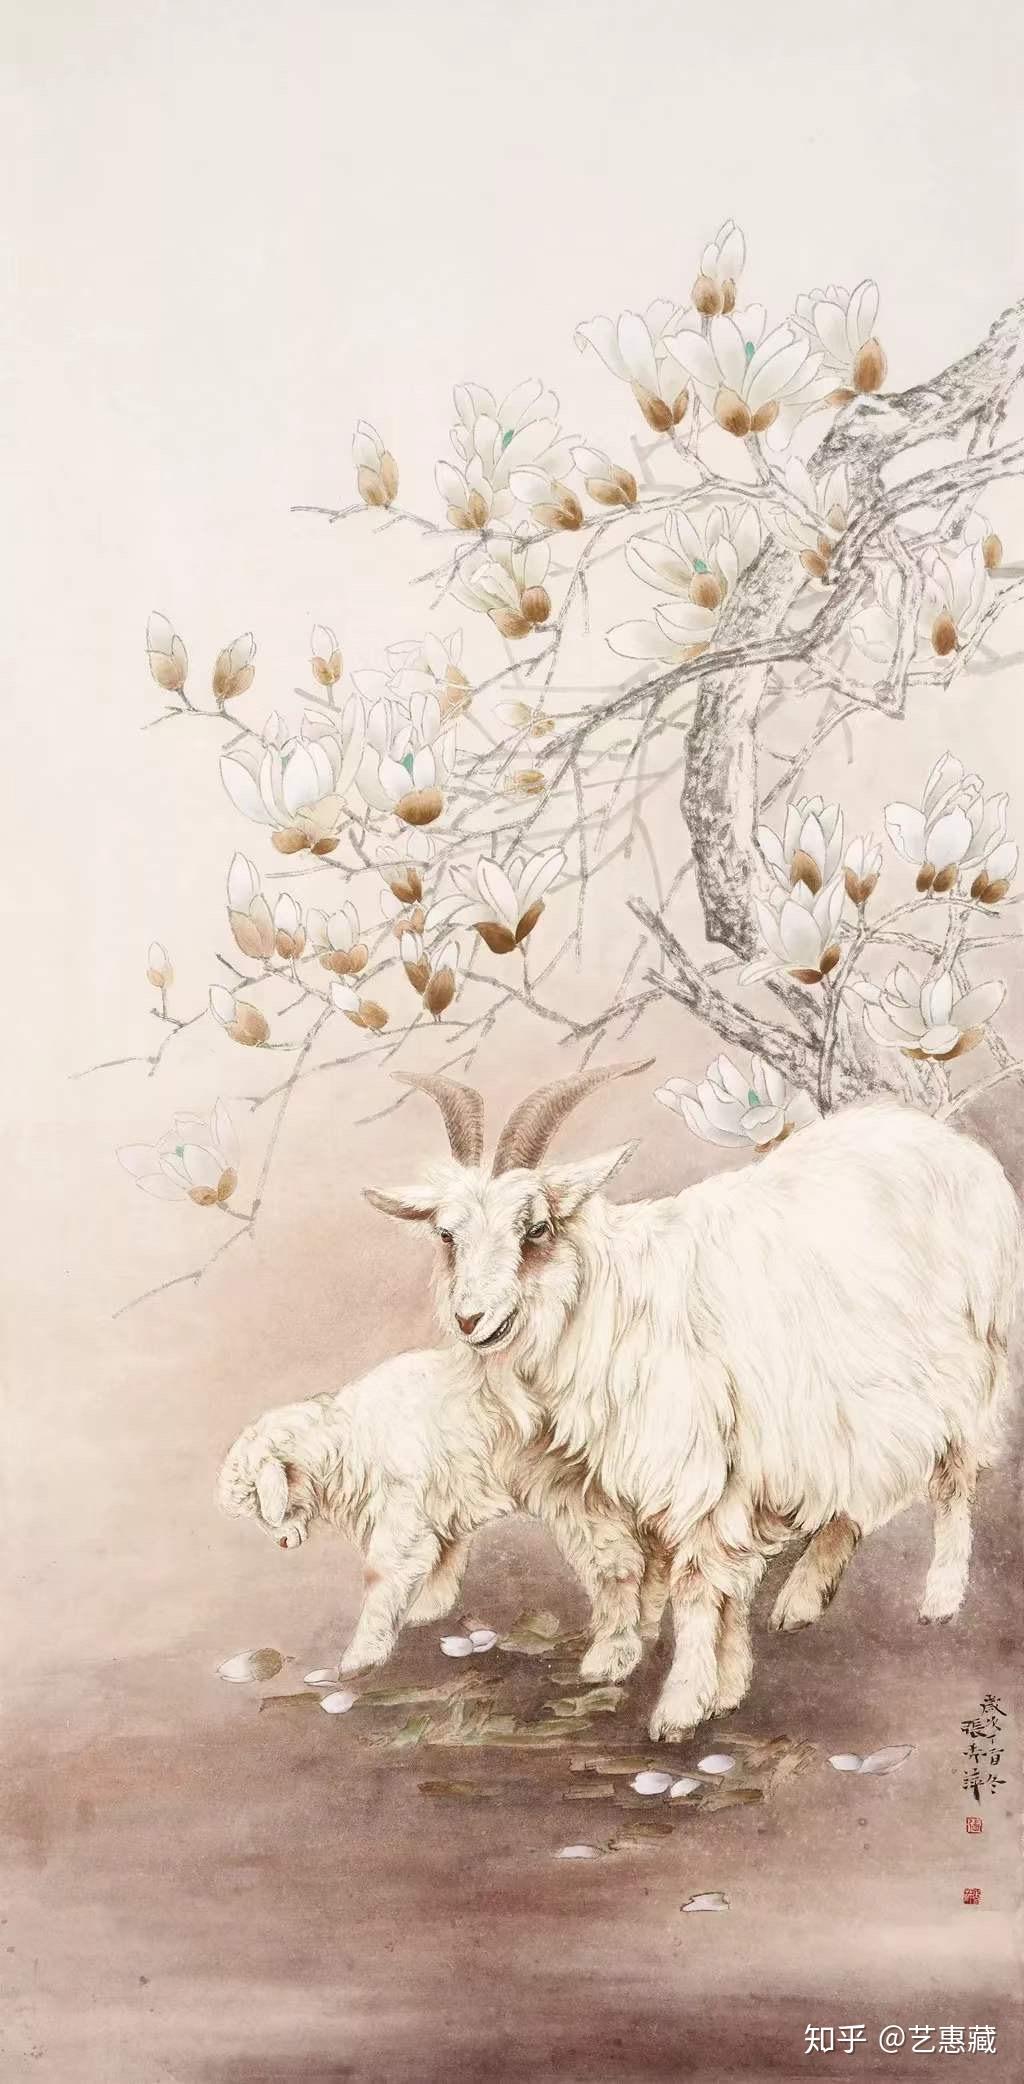 艺惠藏 艺惠藏书画艺术研究院 1人赞同了该文章 古人把羊与祥通用